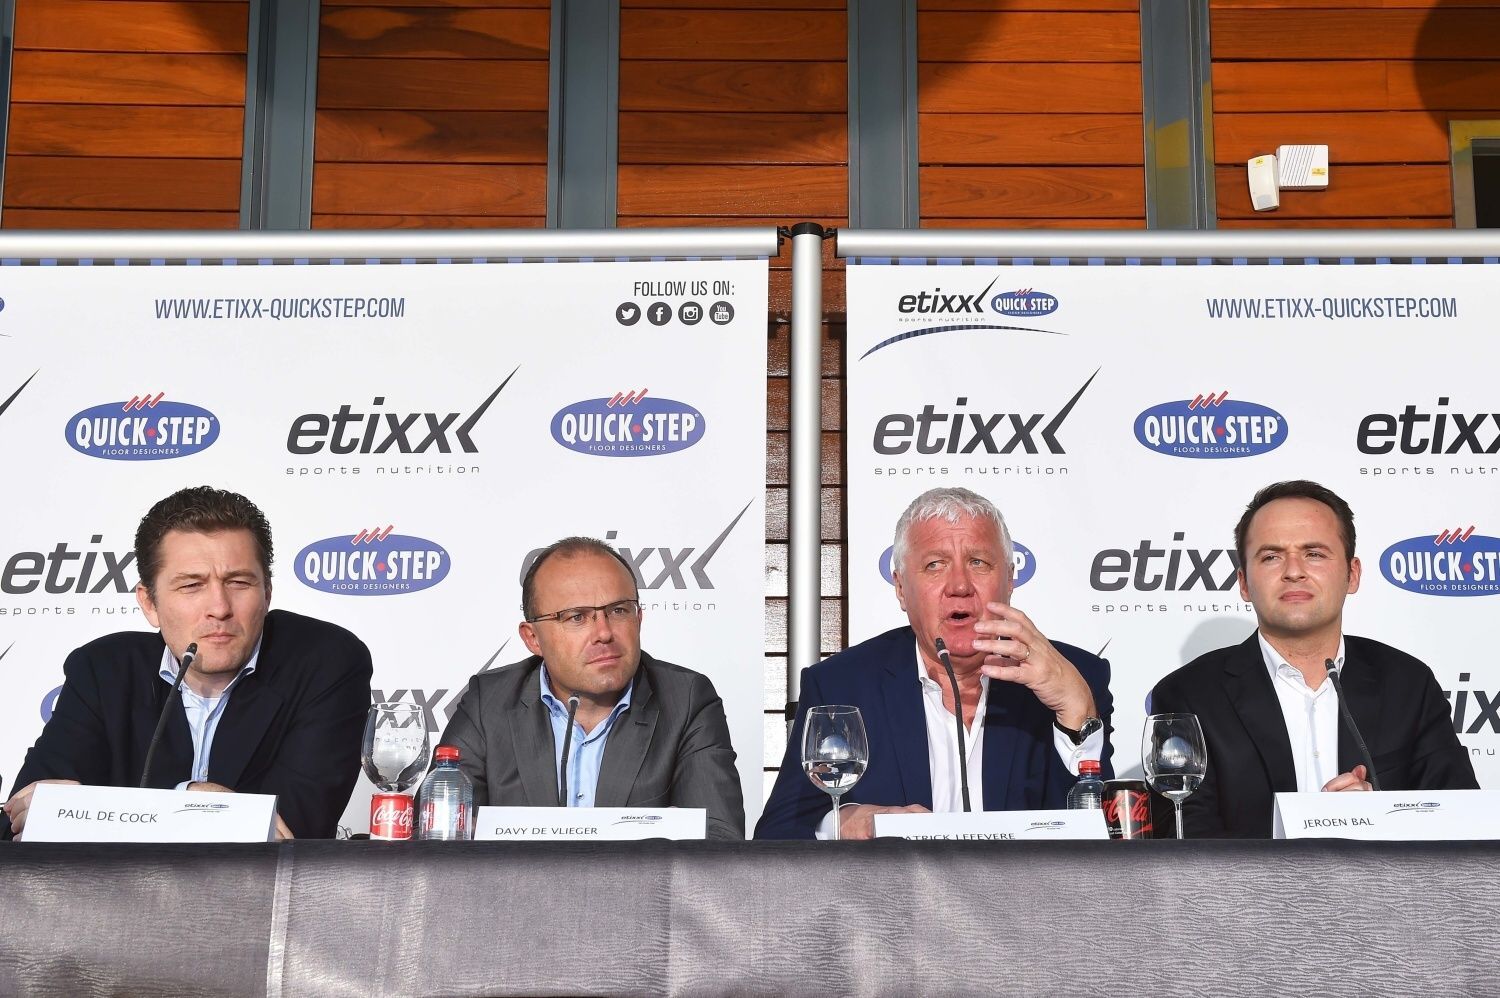 Prezentace týmu Etixx - Quick-Step před sezonou 2016